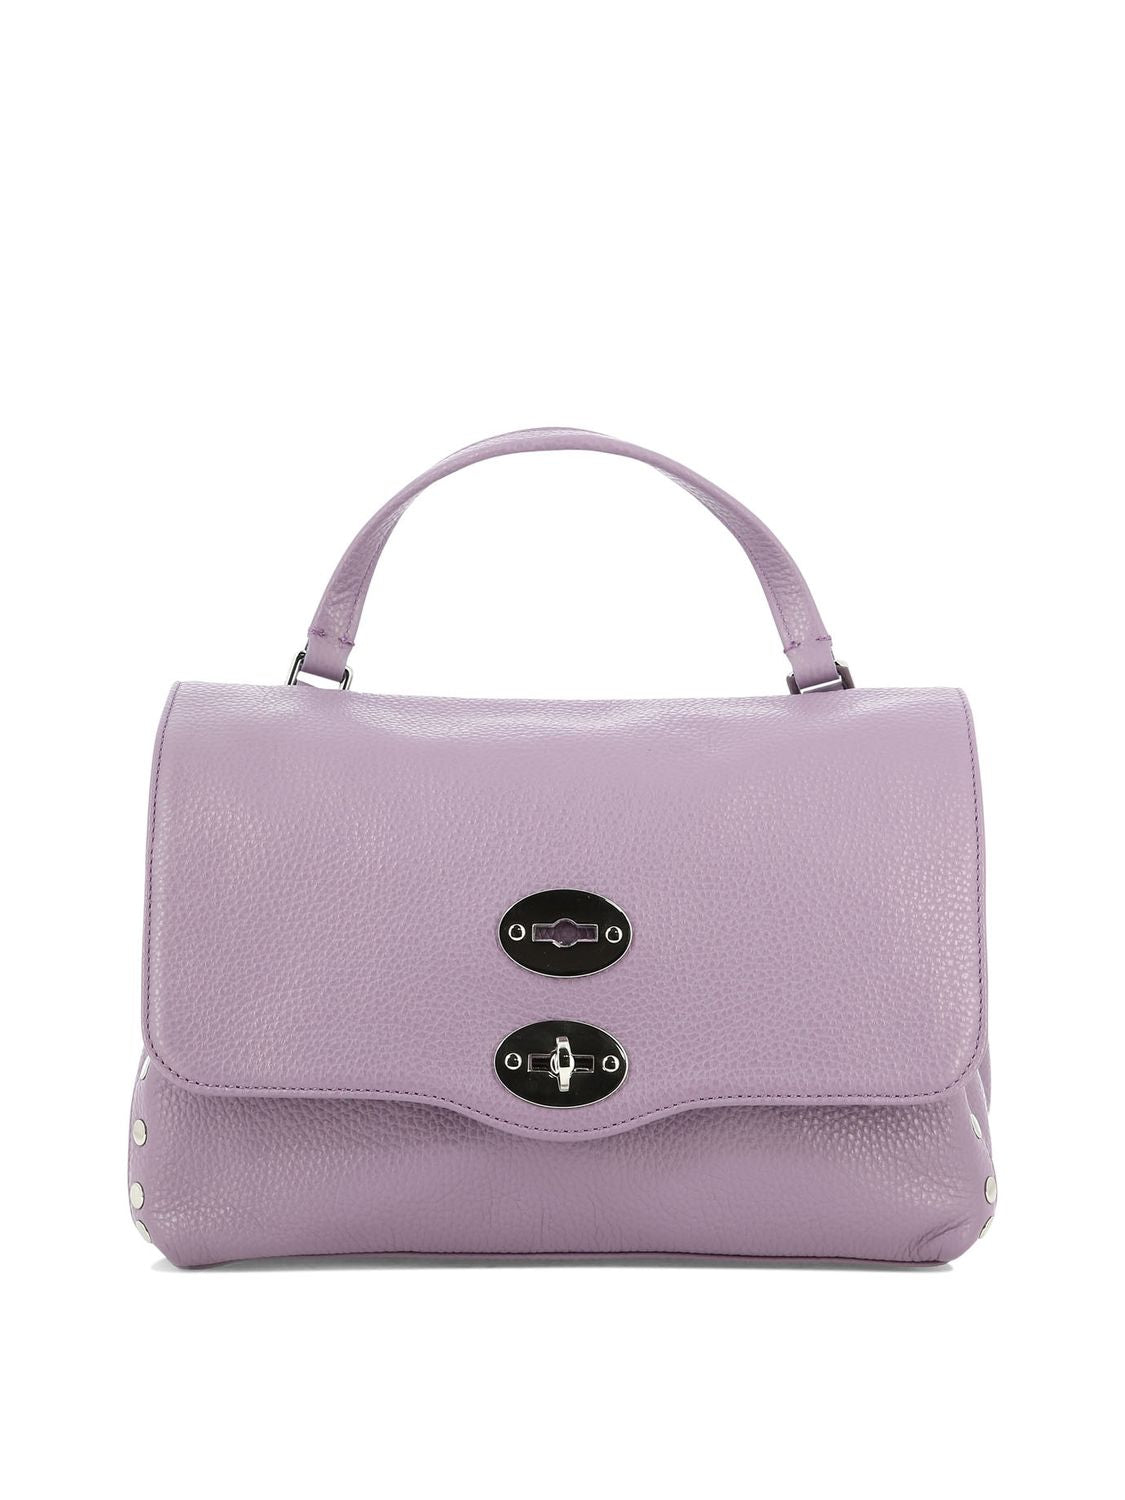 女性用エレガントな紫色のレザーハンドバッグ